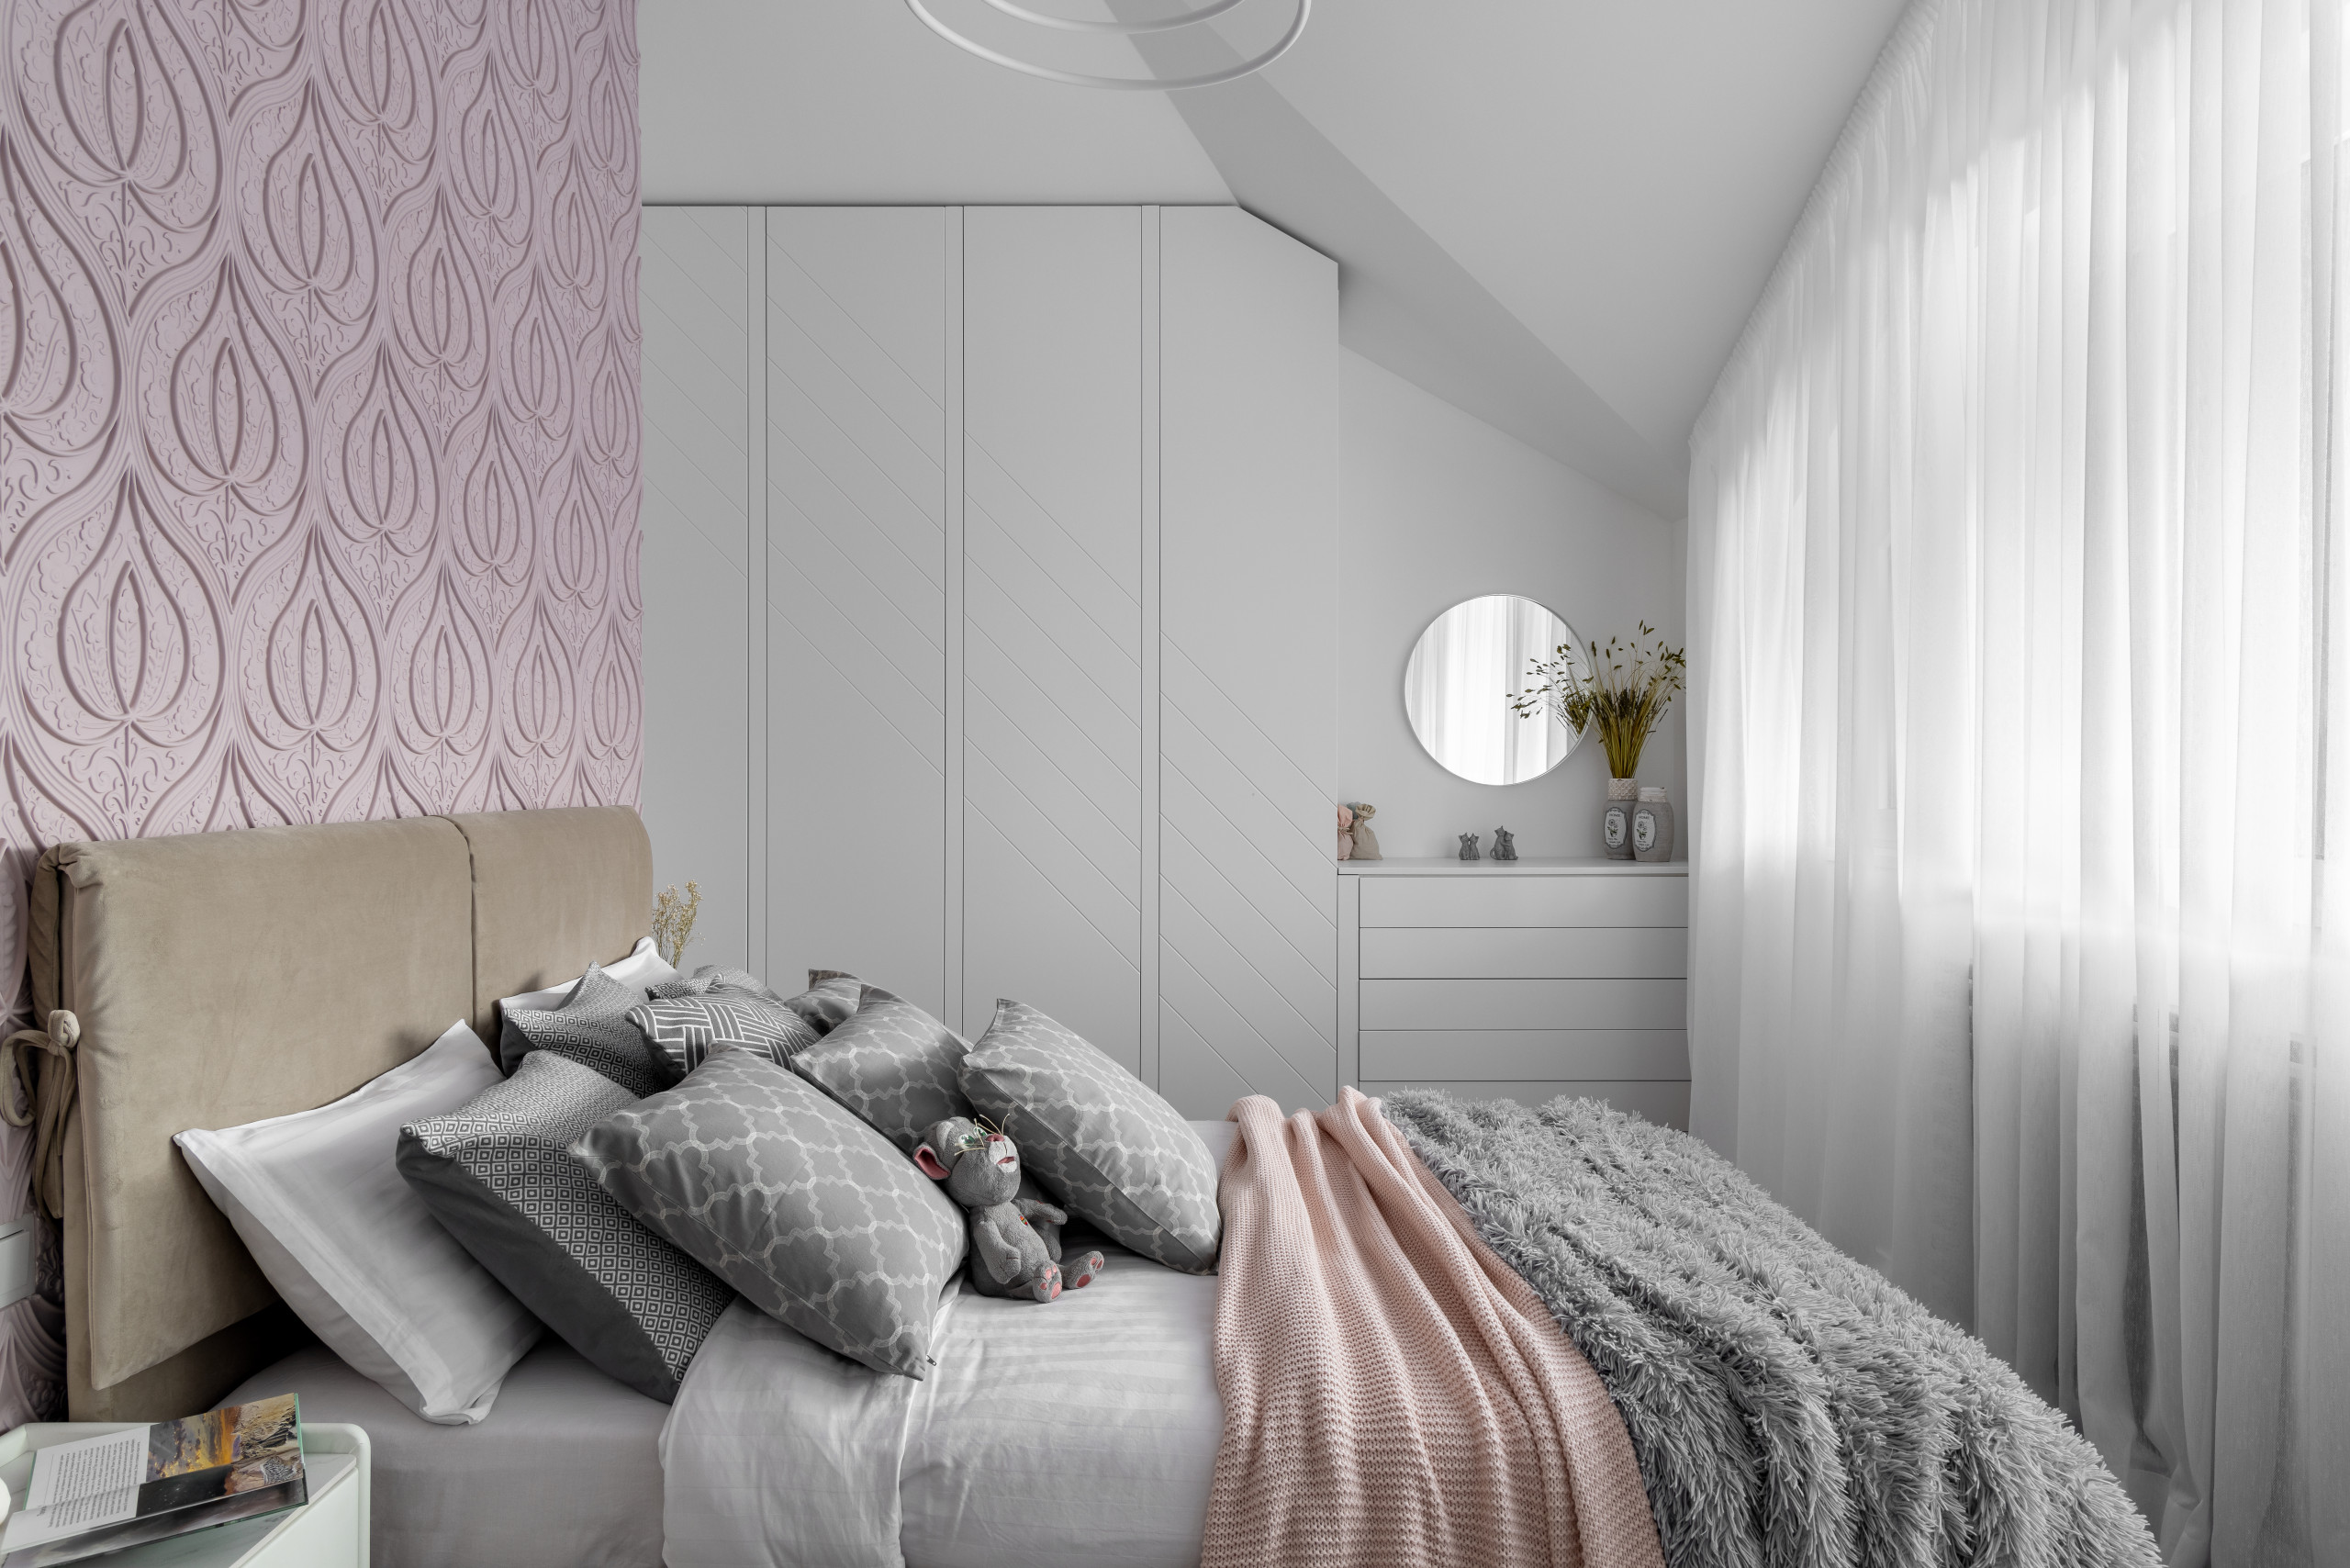 Дизайн спальни 13 кв м фото: реальный интерьер, проект квадратной комнаты